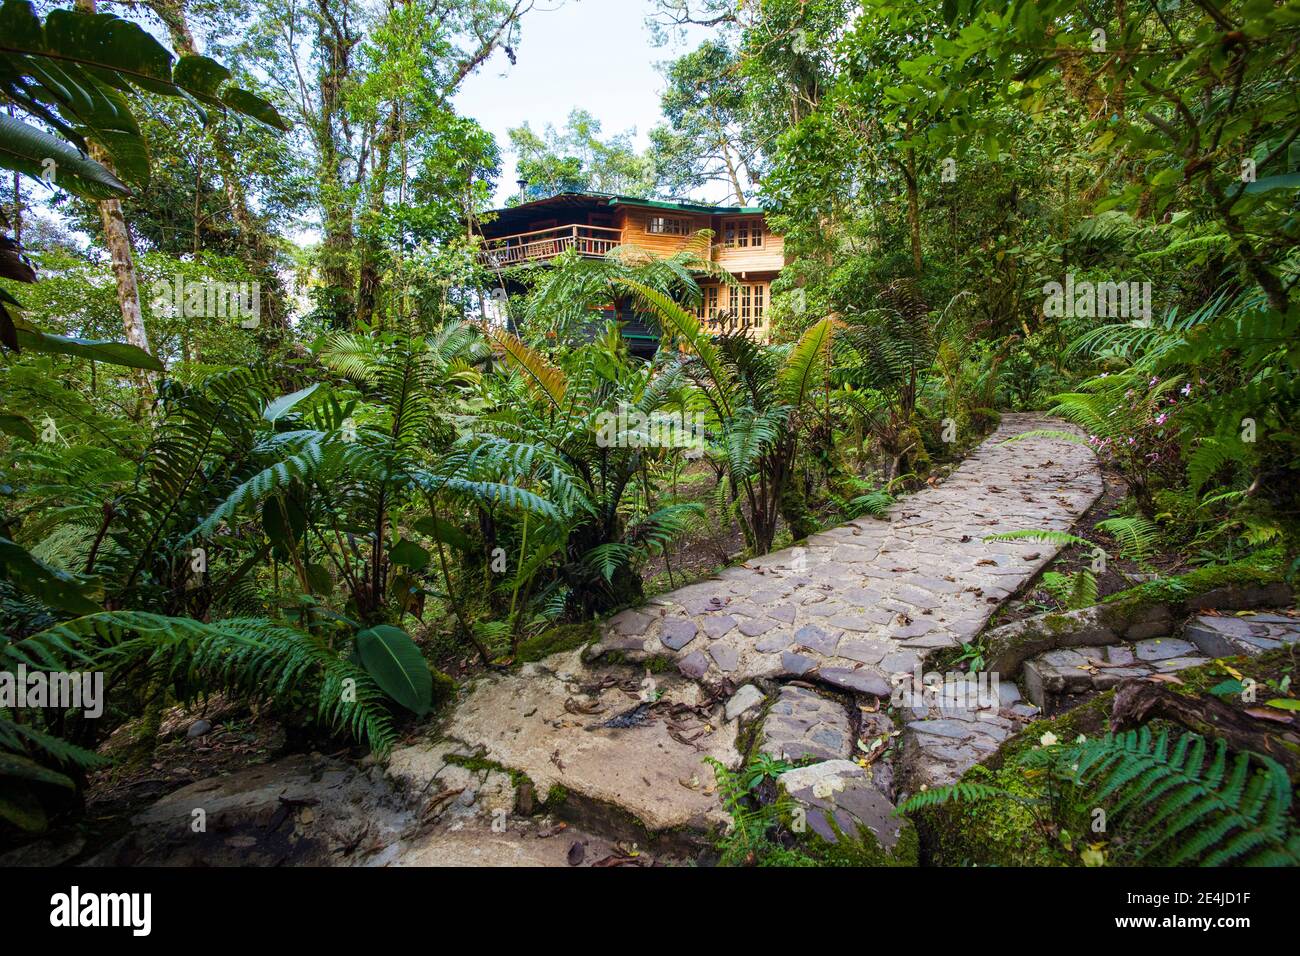 Magnifique cadre dans la forêt tropicale entourant Los Quetzales Lodge, parc national de la Amistad, province de Chiriqui, République du Panama. Banque D'Images